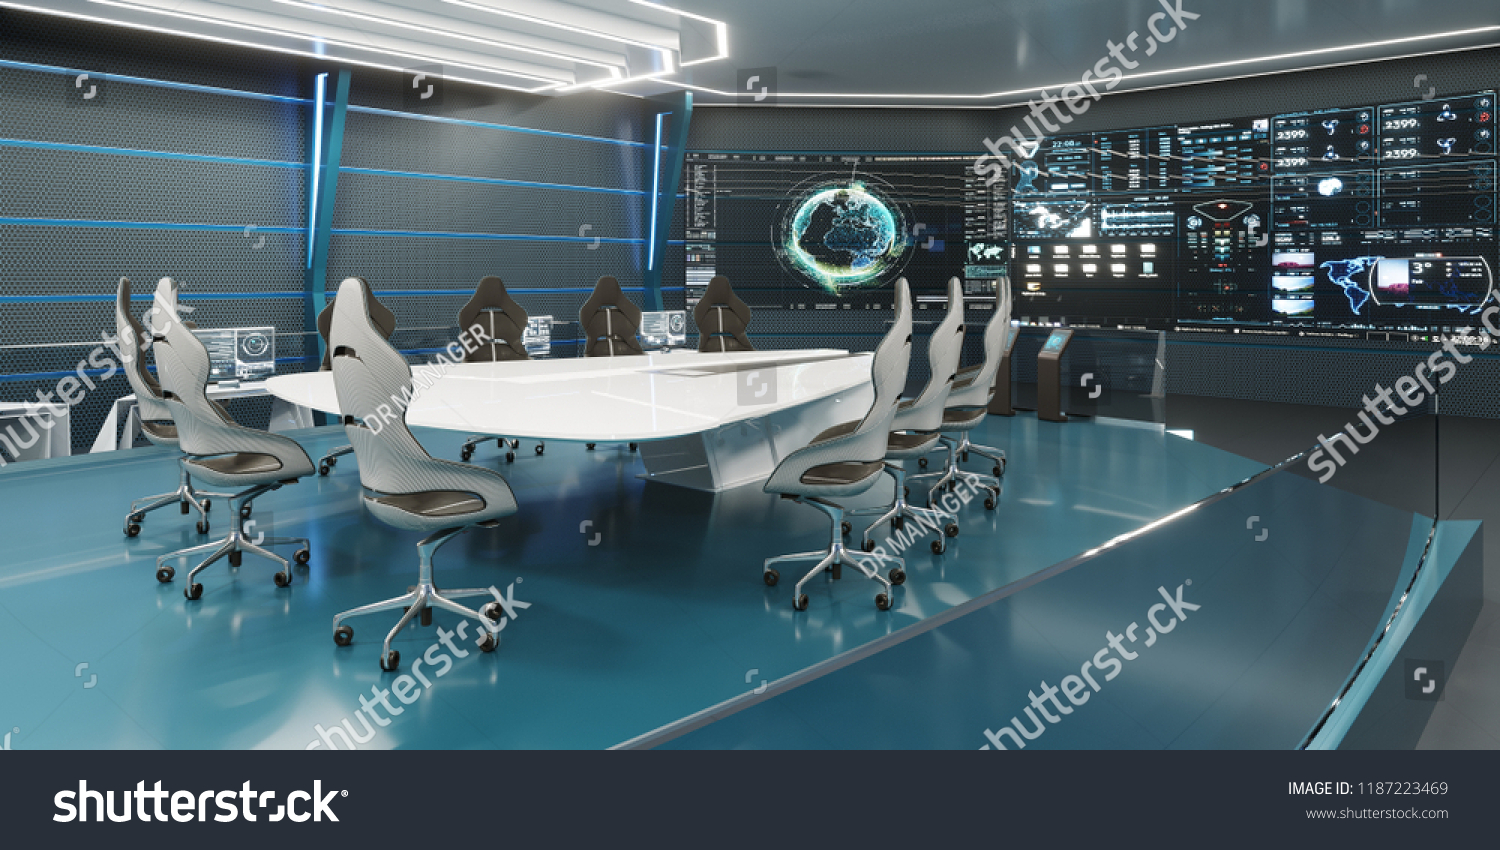 コマンドセンター 会議室 コンセプトデザイン 大きな机を中心にした大きなディスプレイ 3dレンダリング のイラスト素材